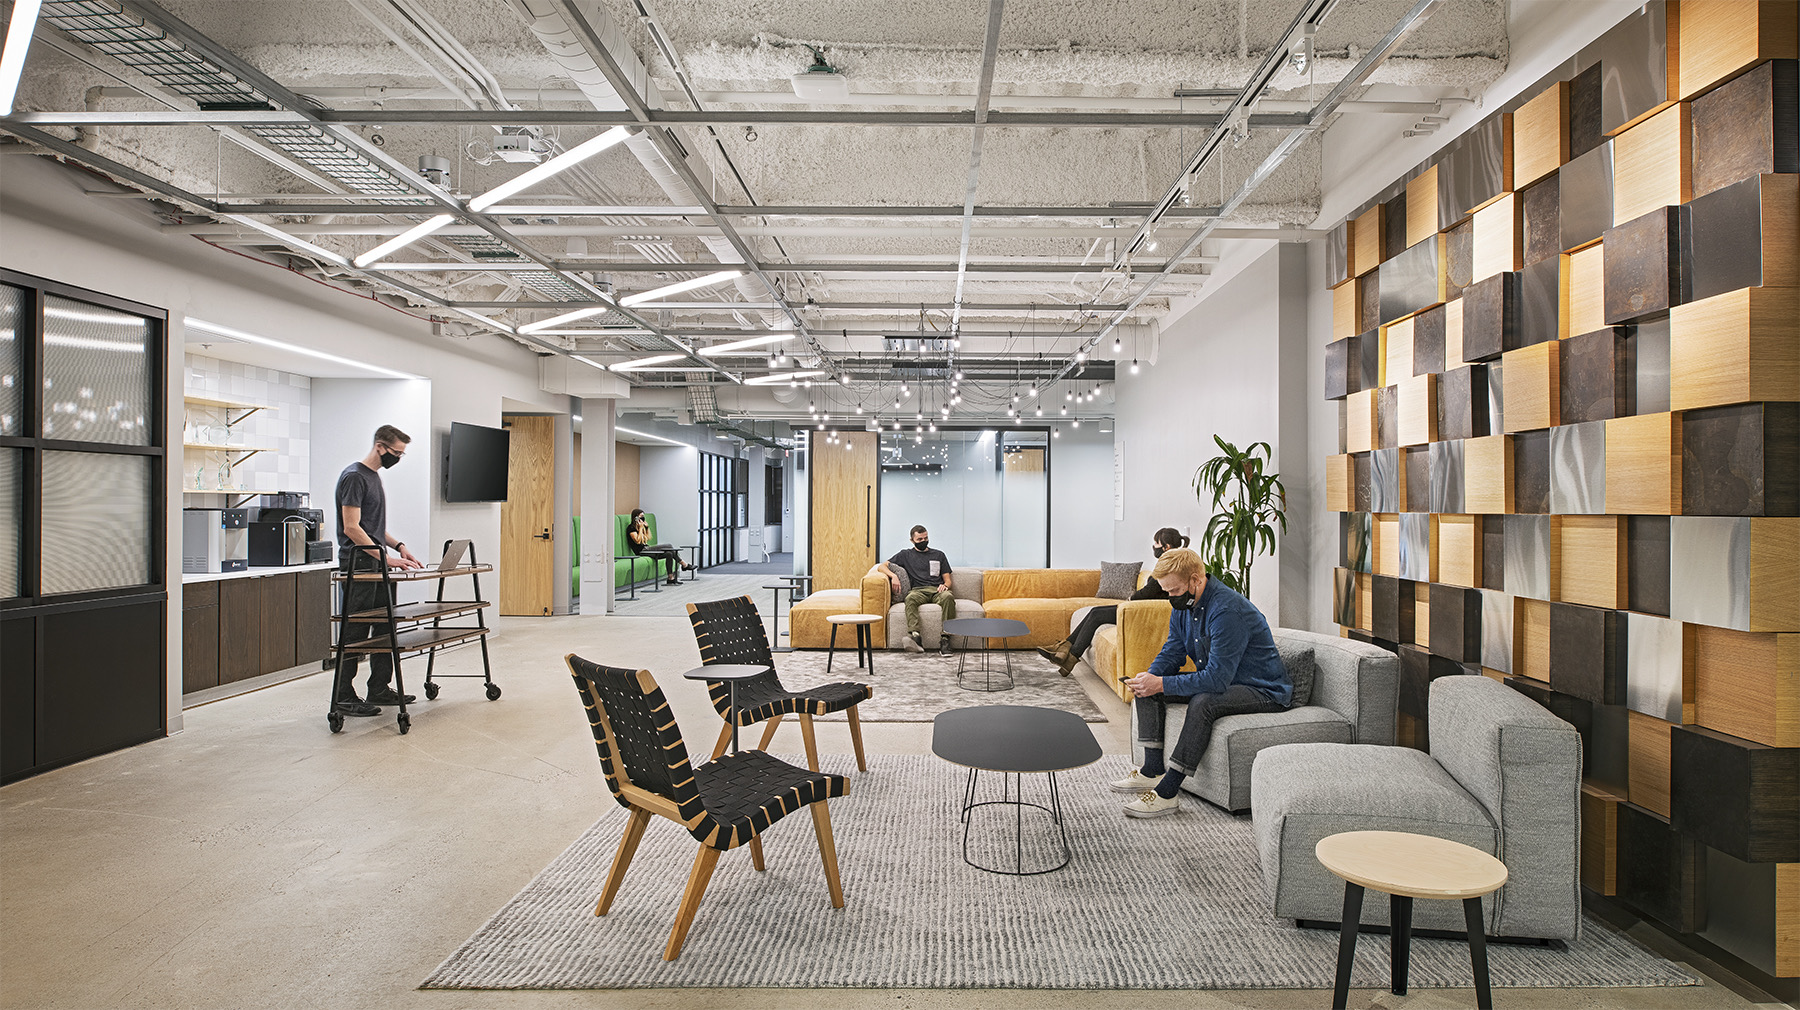 A Look Inside LLamasoft’s New Ann Arbor Office